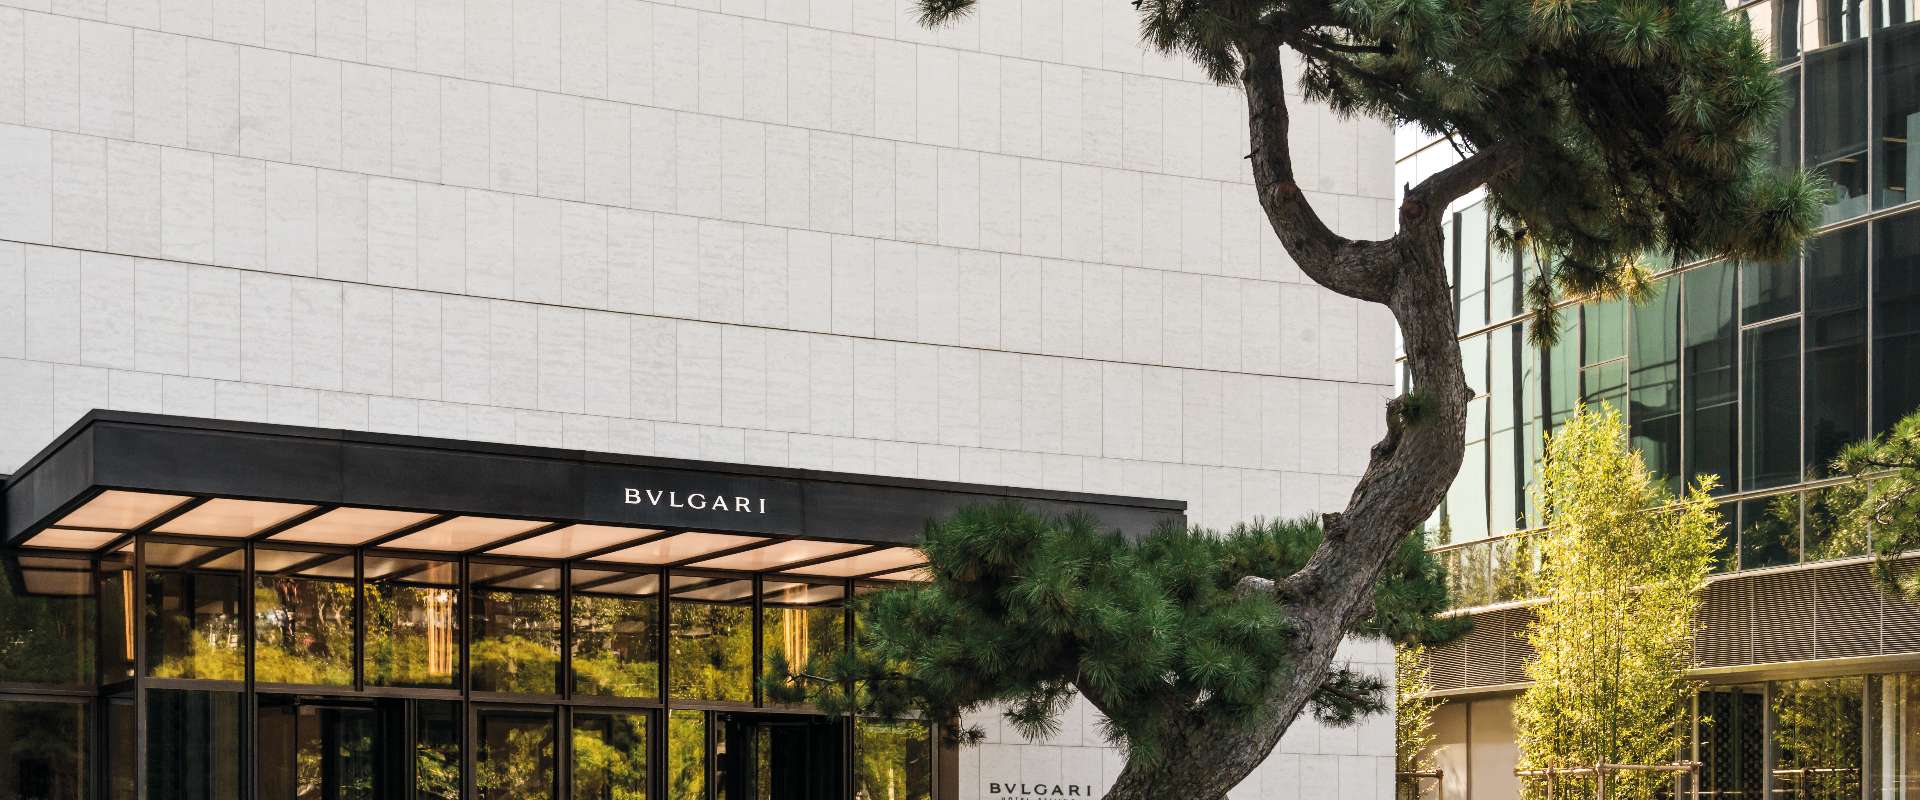 Bvlgari Hotel Beijing - Overview